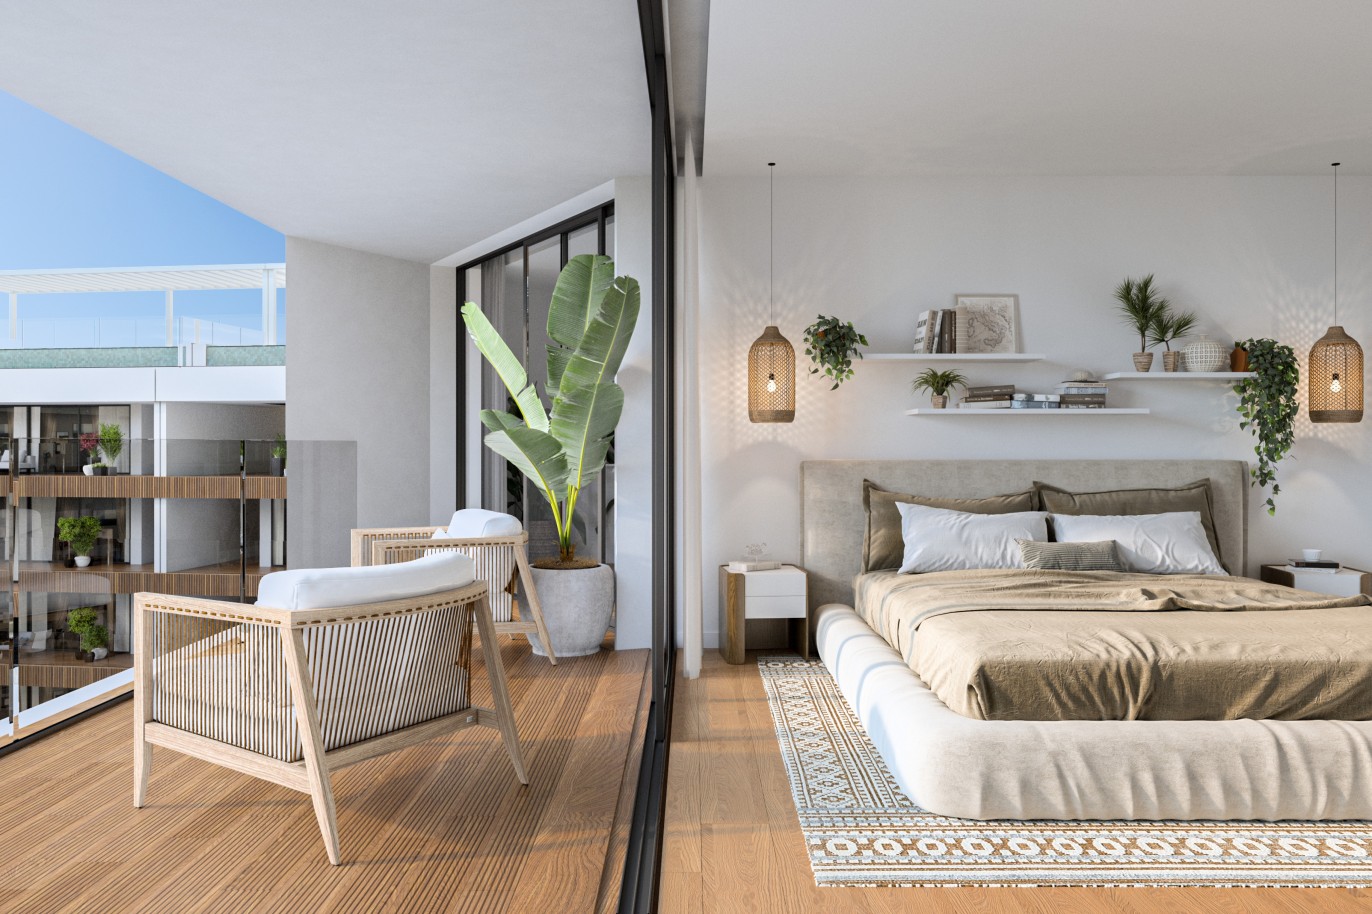 Appartements neufs avec vue sur mer, 1, 2 & 3 chambres, à vendre à Olhão, Algarve_244393